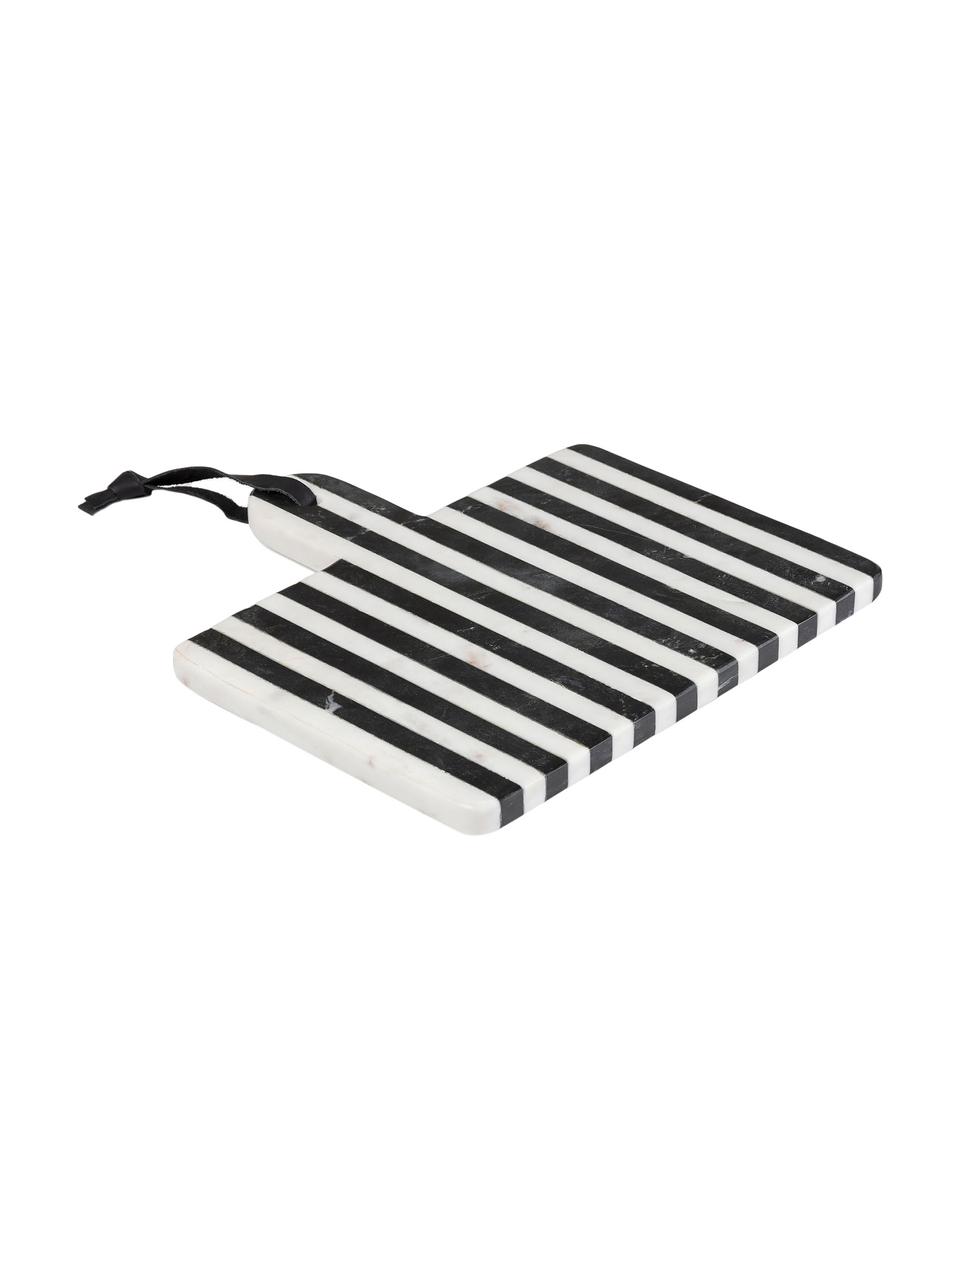 Marmeren snijplank Bergman in zwart/wit, Keramiek, marmer, kunstleer, Zwart, wit, 25 x 25 cm